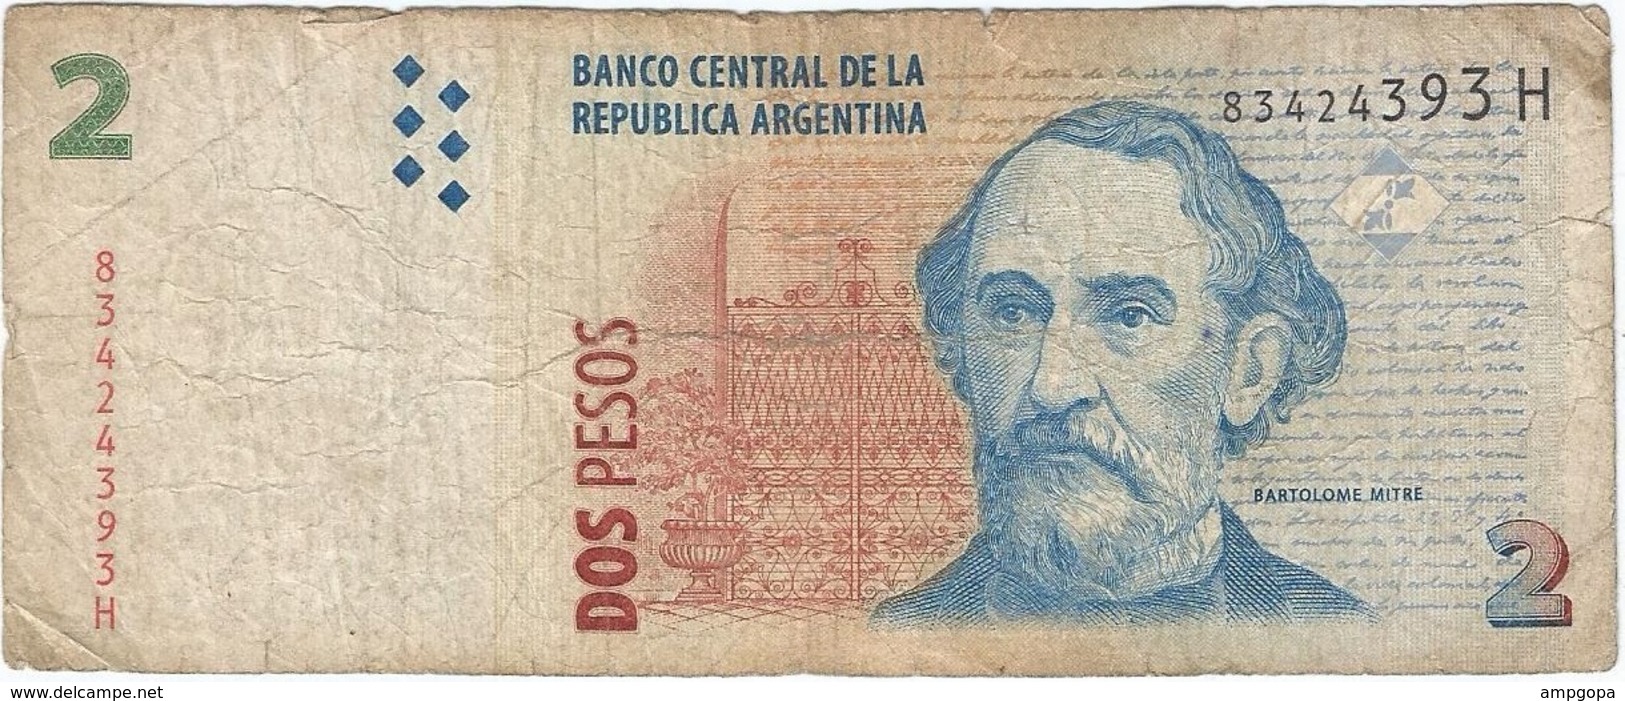 Argentina 2 Pesos 2002 Pk 352 8 Ref 30 - Argentina